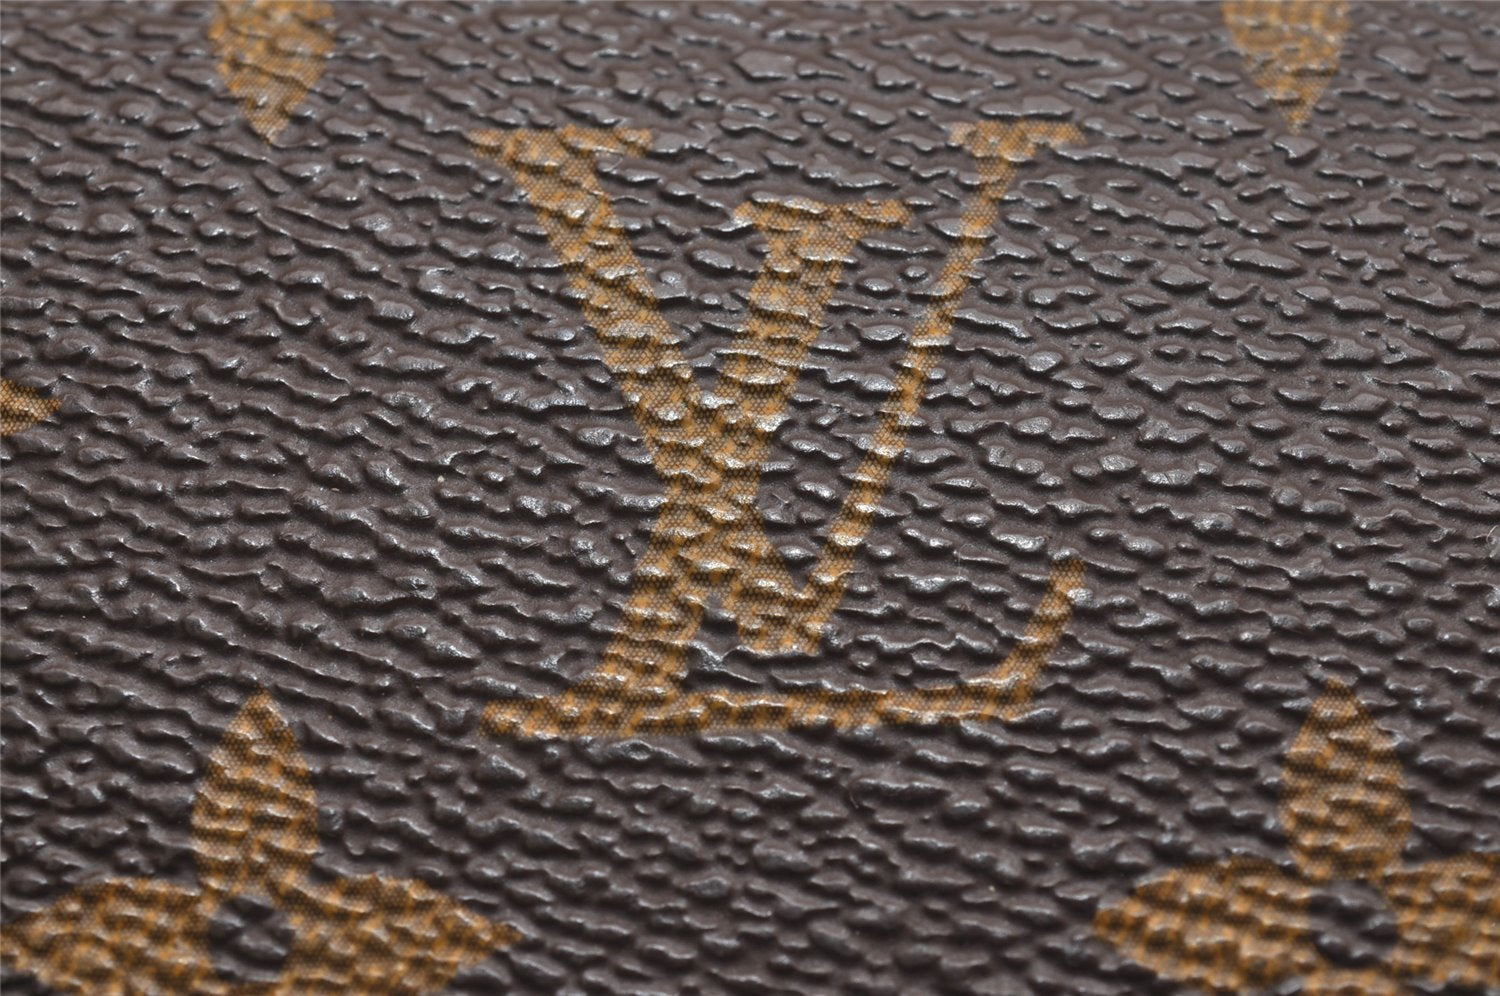 Authentic Louis Vuitton Monogram Portefeuille Sarah Purse Wallet M60531 LV 4051J